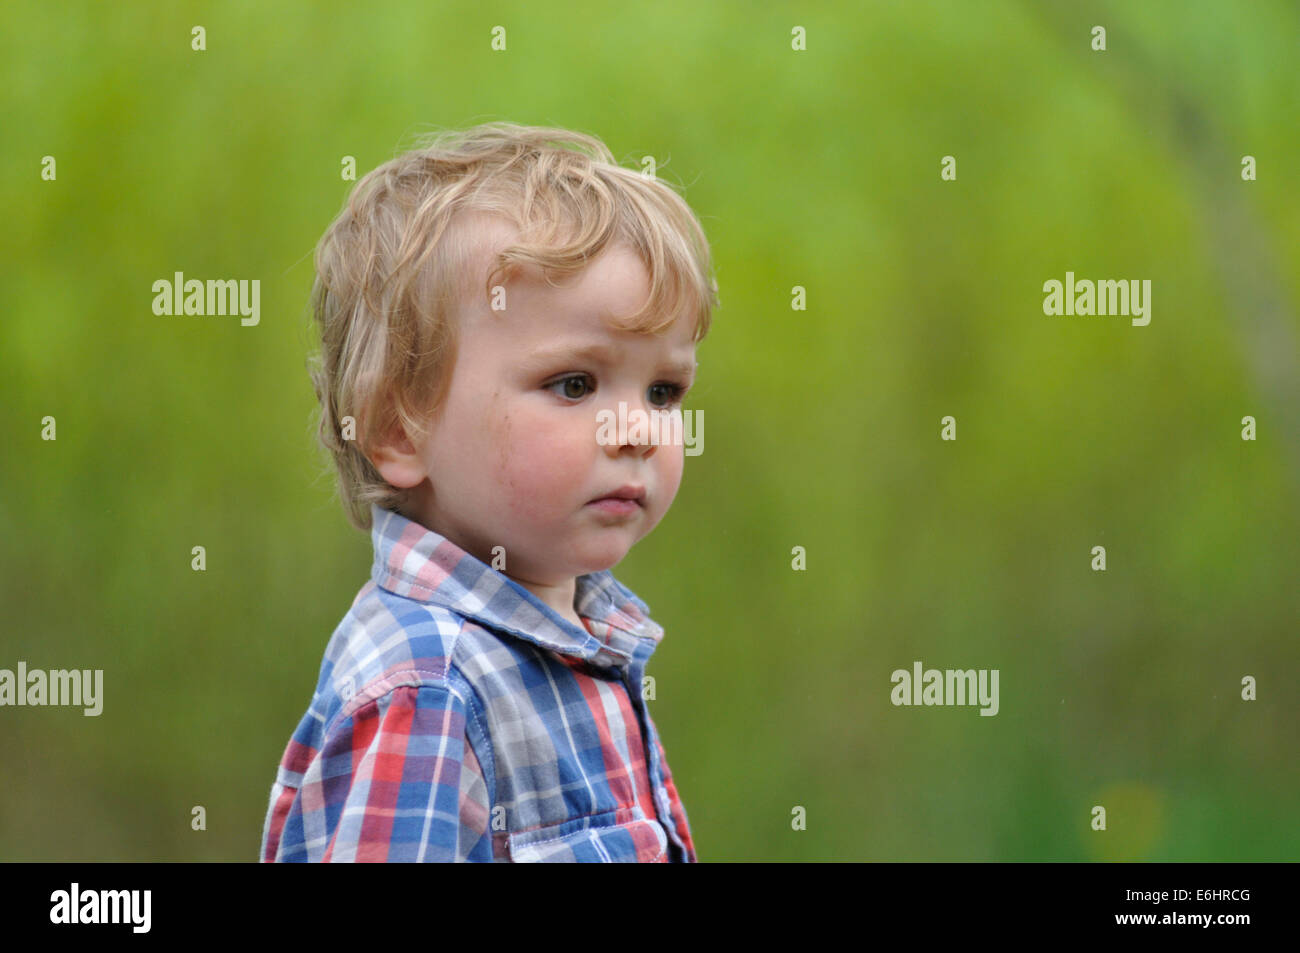 Portrait d'un petit garçon pris en plein air avec un fond vert Banque D'Images